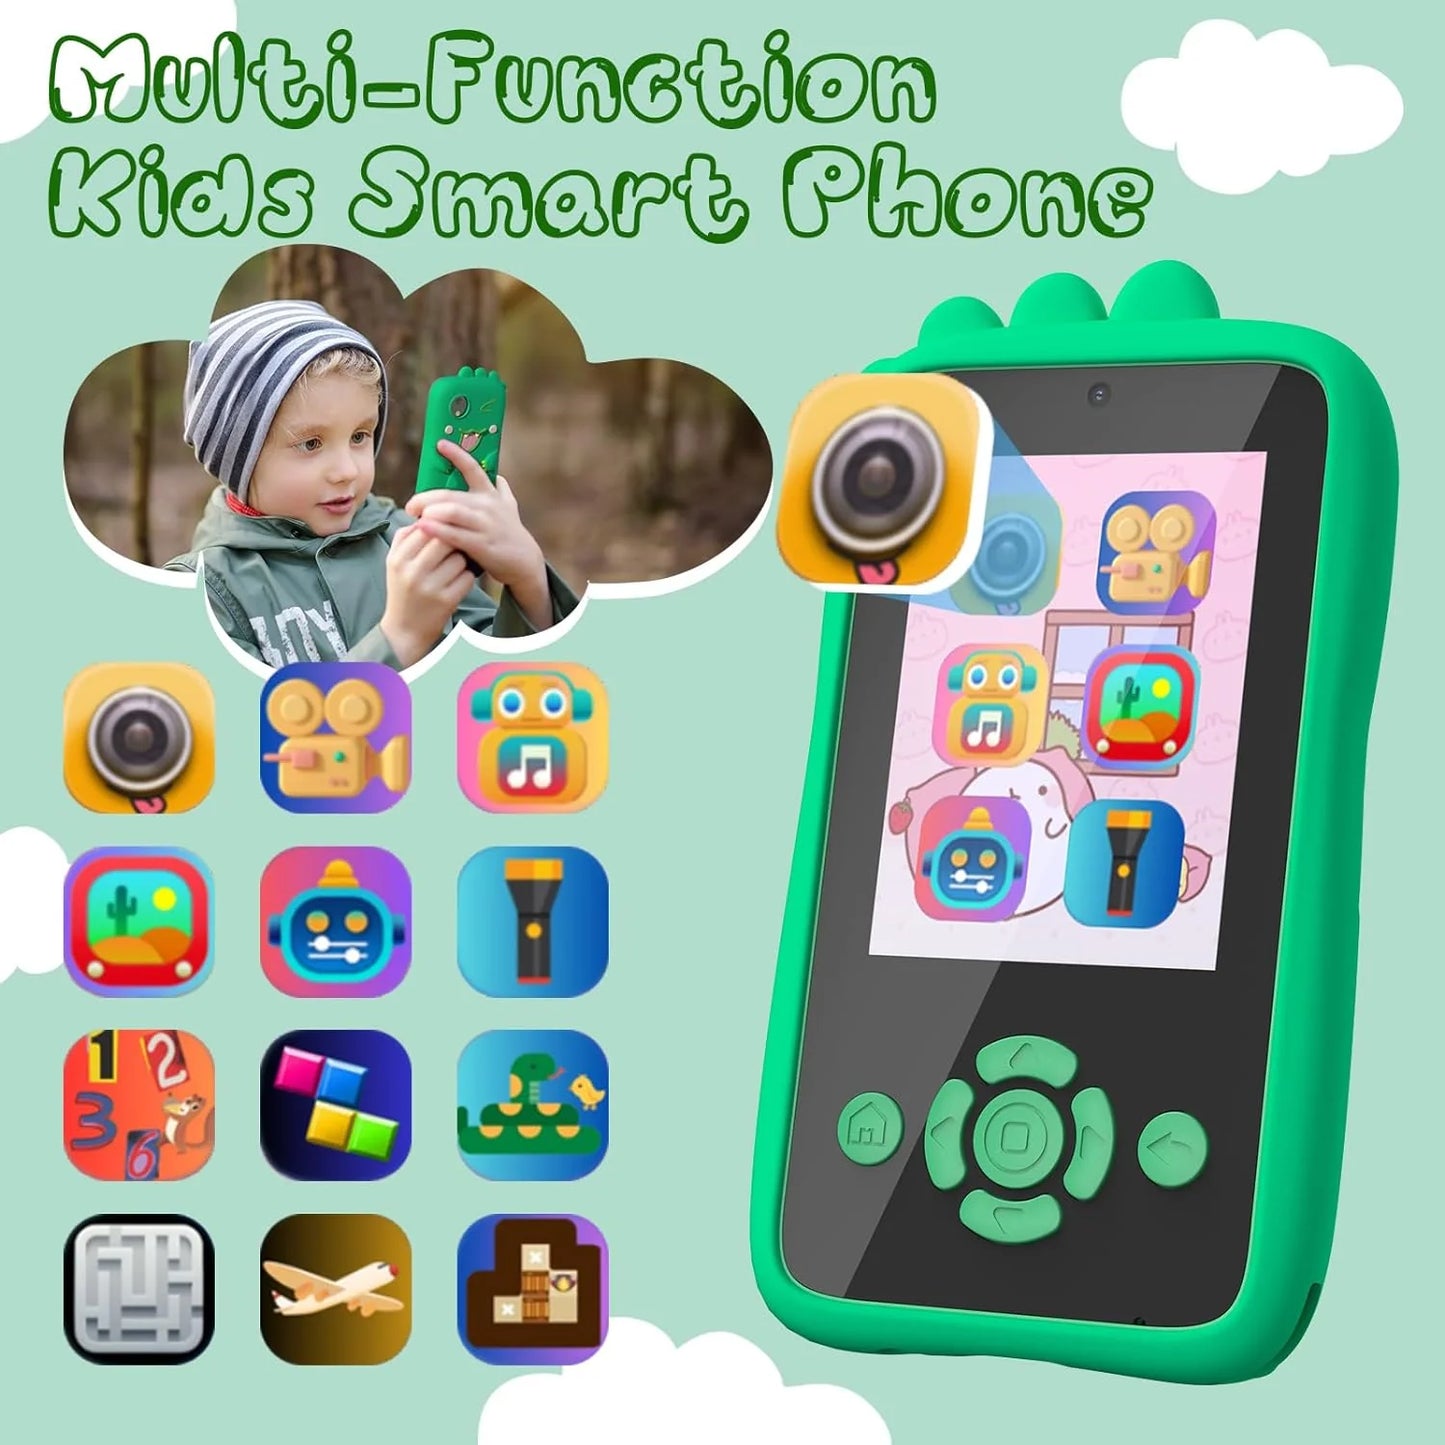 Kids Smartphone - Camera, Games, Music, Fun !!